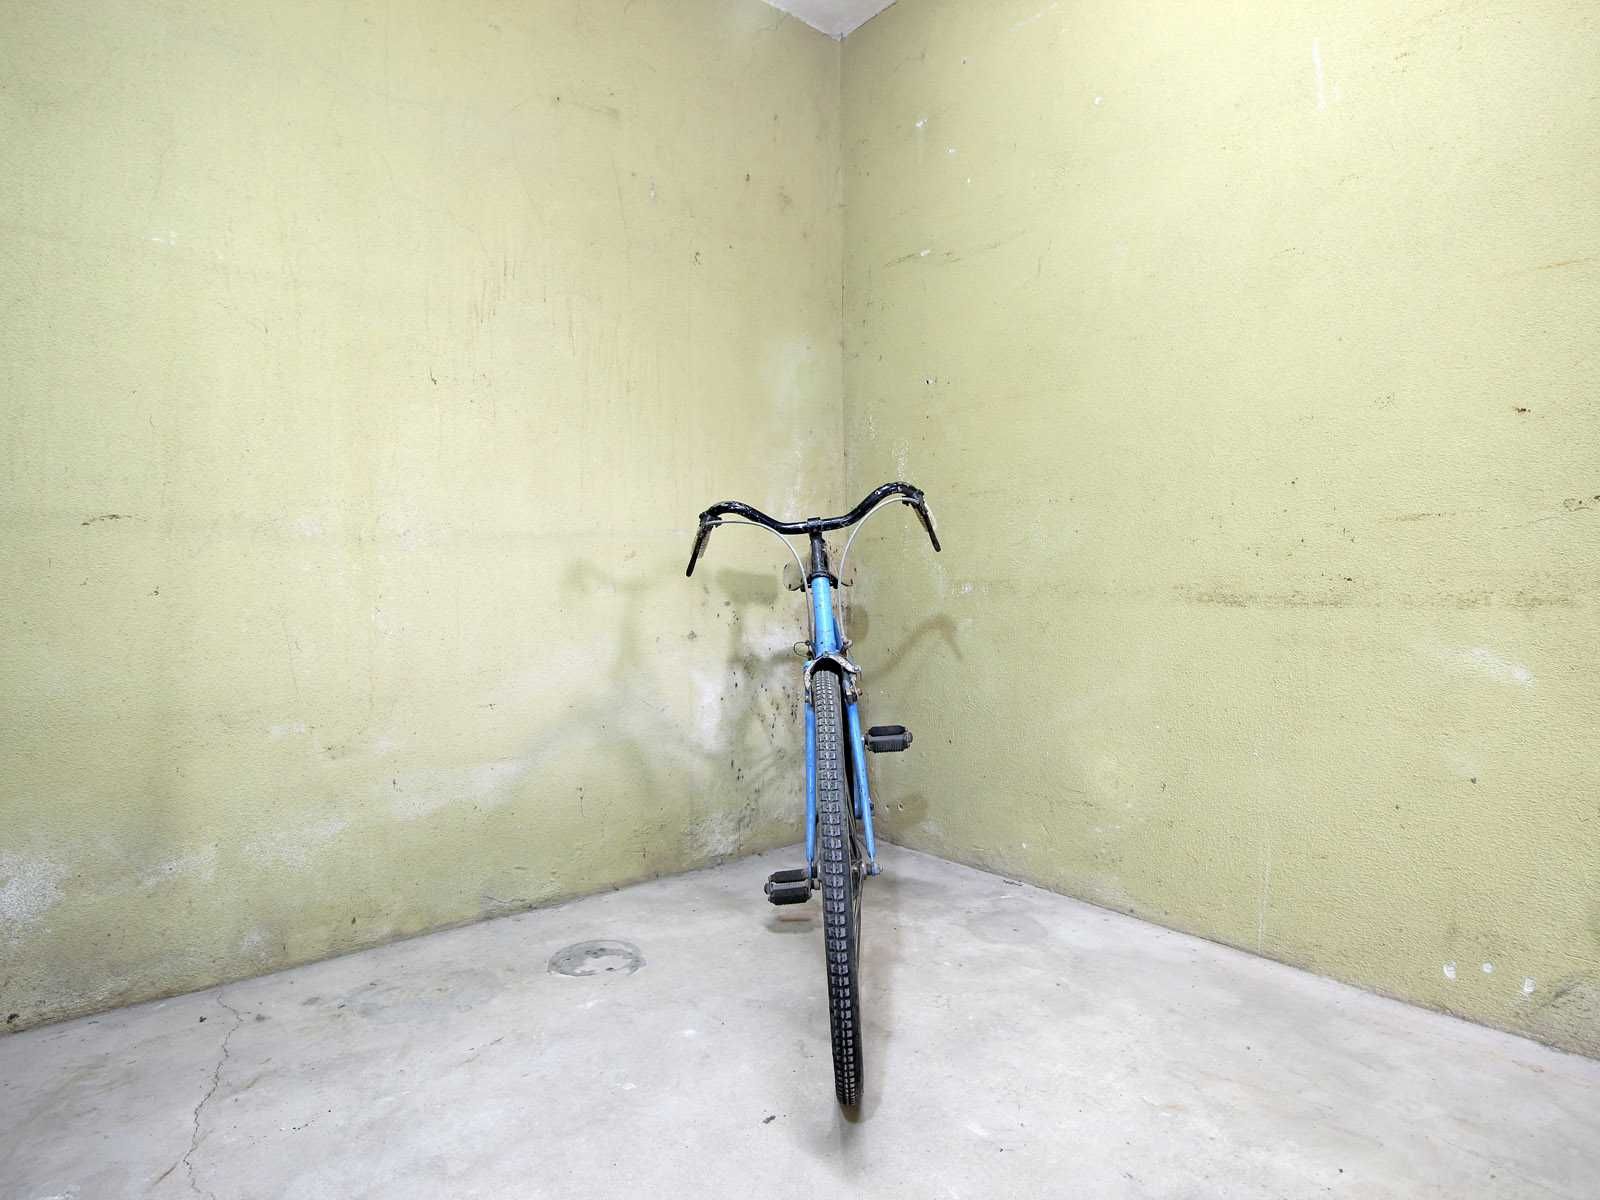 Bicicleta Vilar de passeio, para uso do dia a dia, para venda